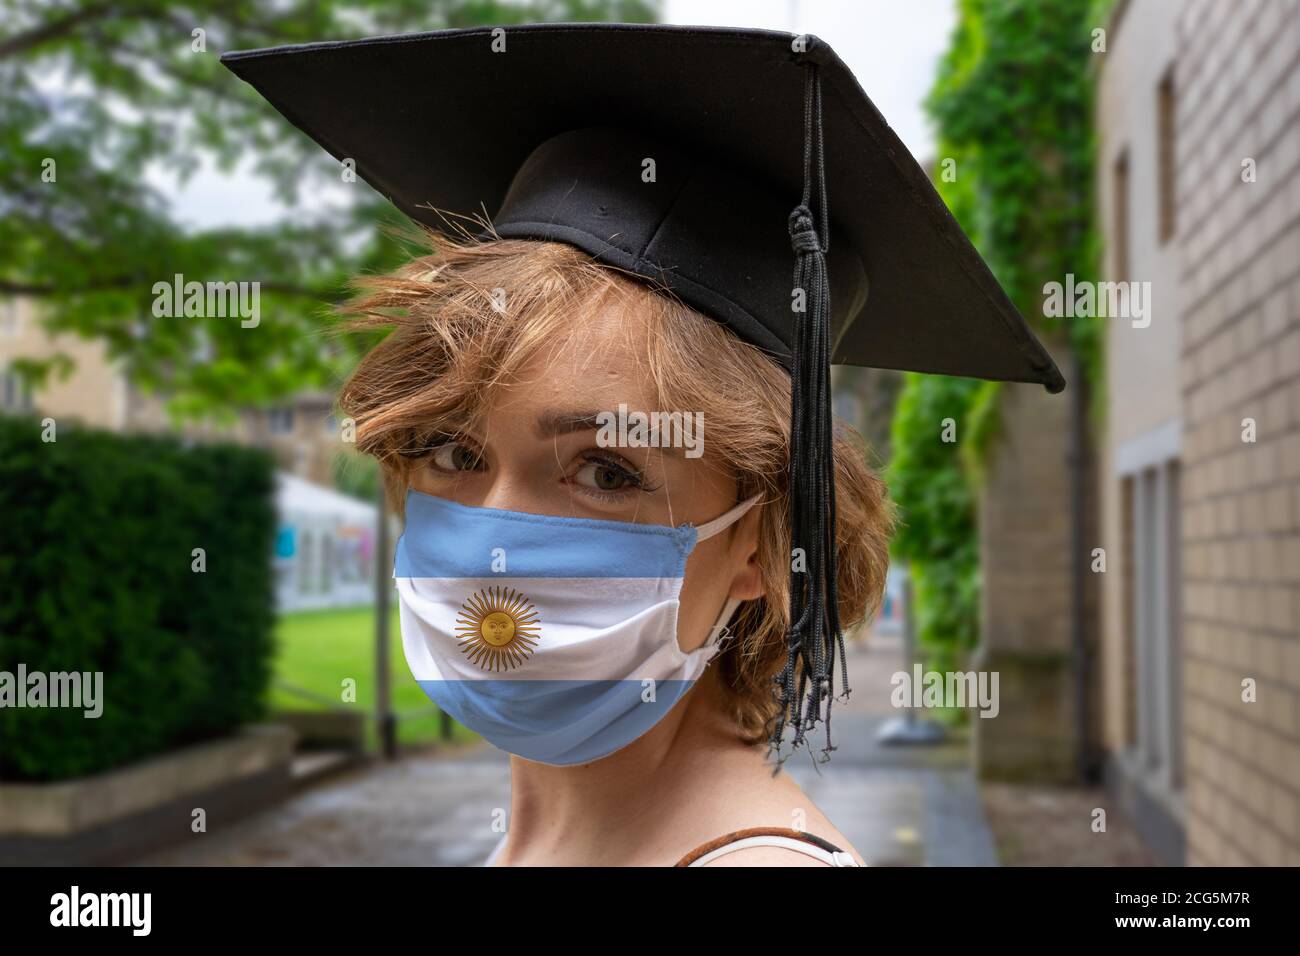 Étudiant Gradation avec la conception Argentine protectice du masque facial du coronavirus à La cérémonie de remise des diplômes à l'Université Banque D'Images